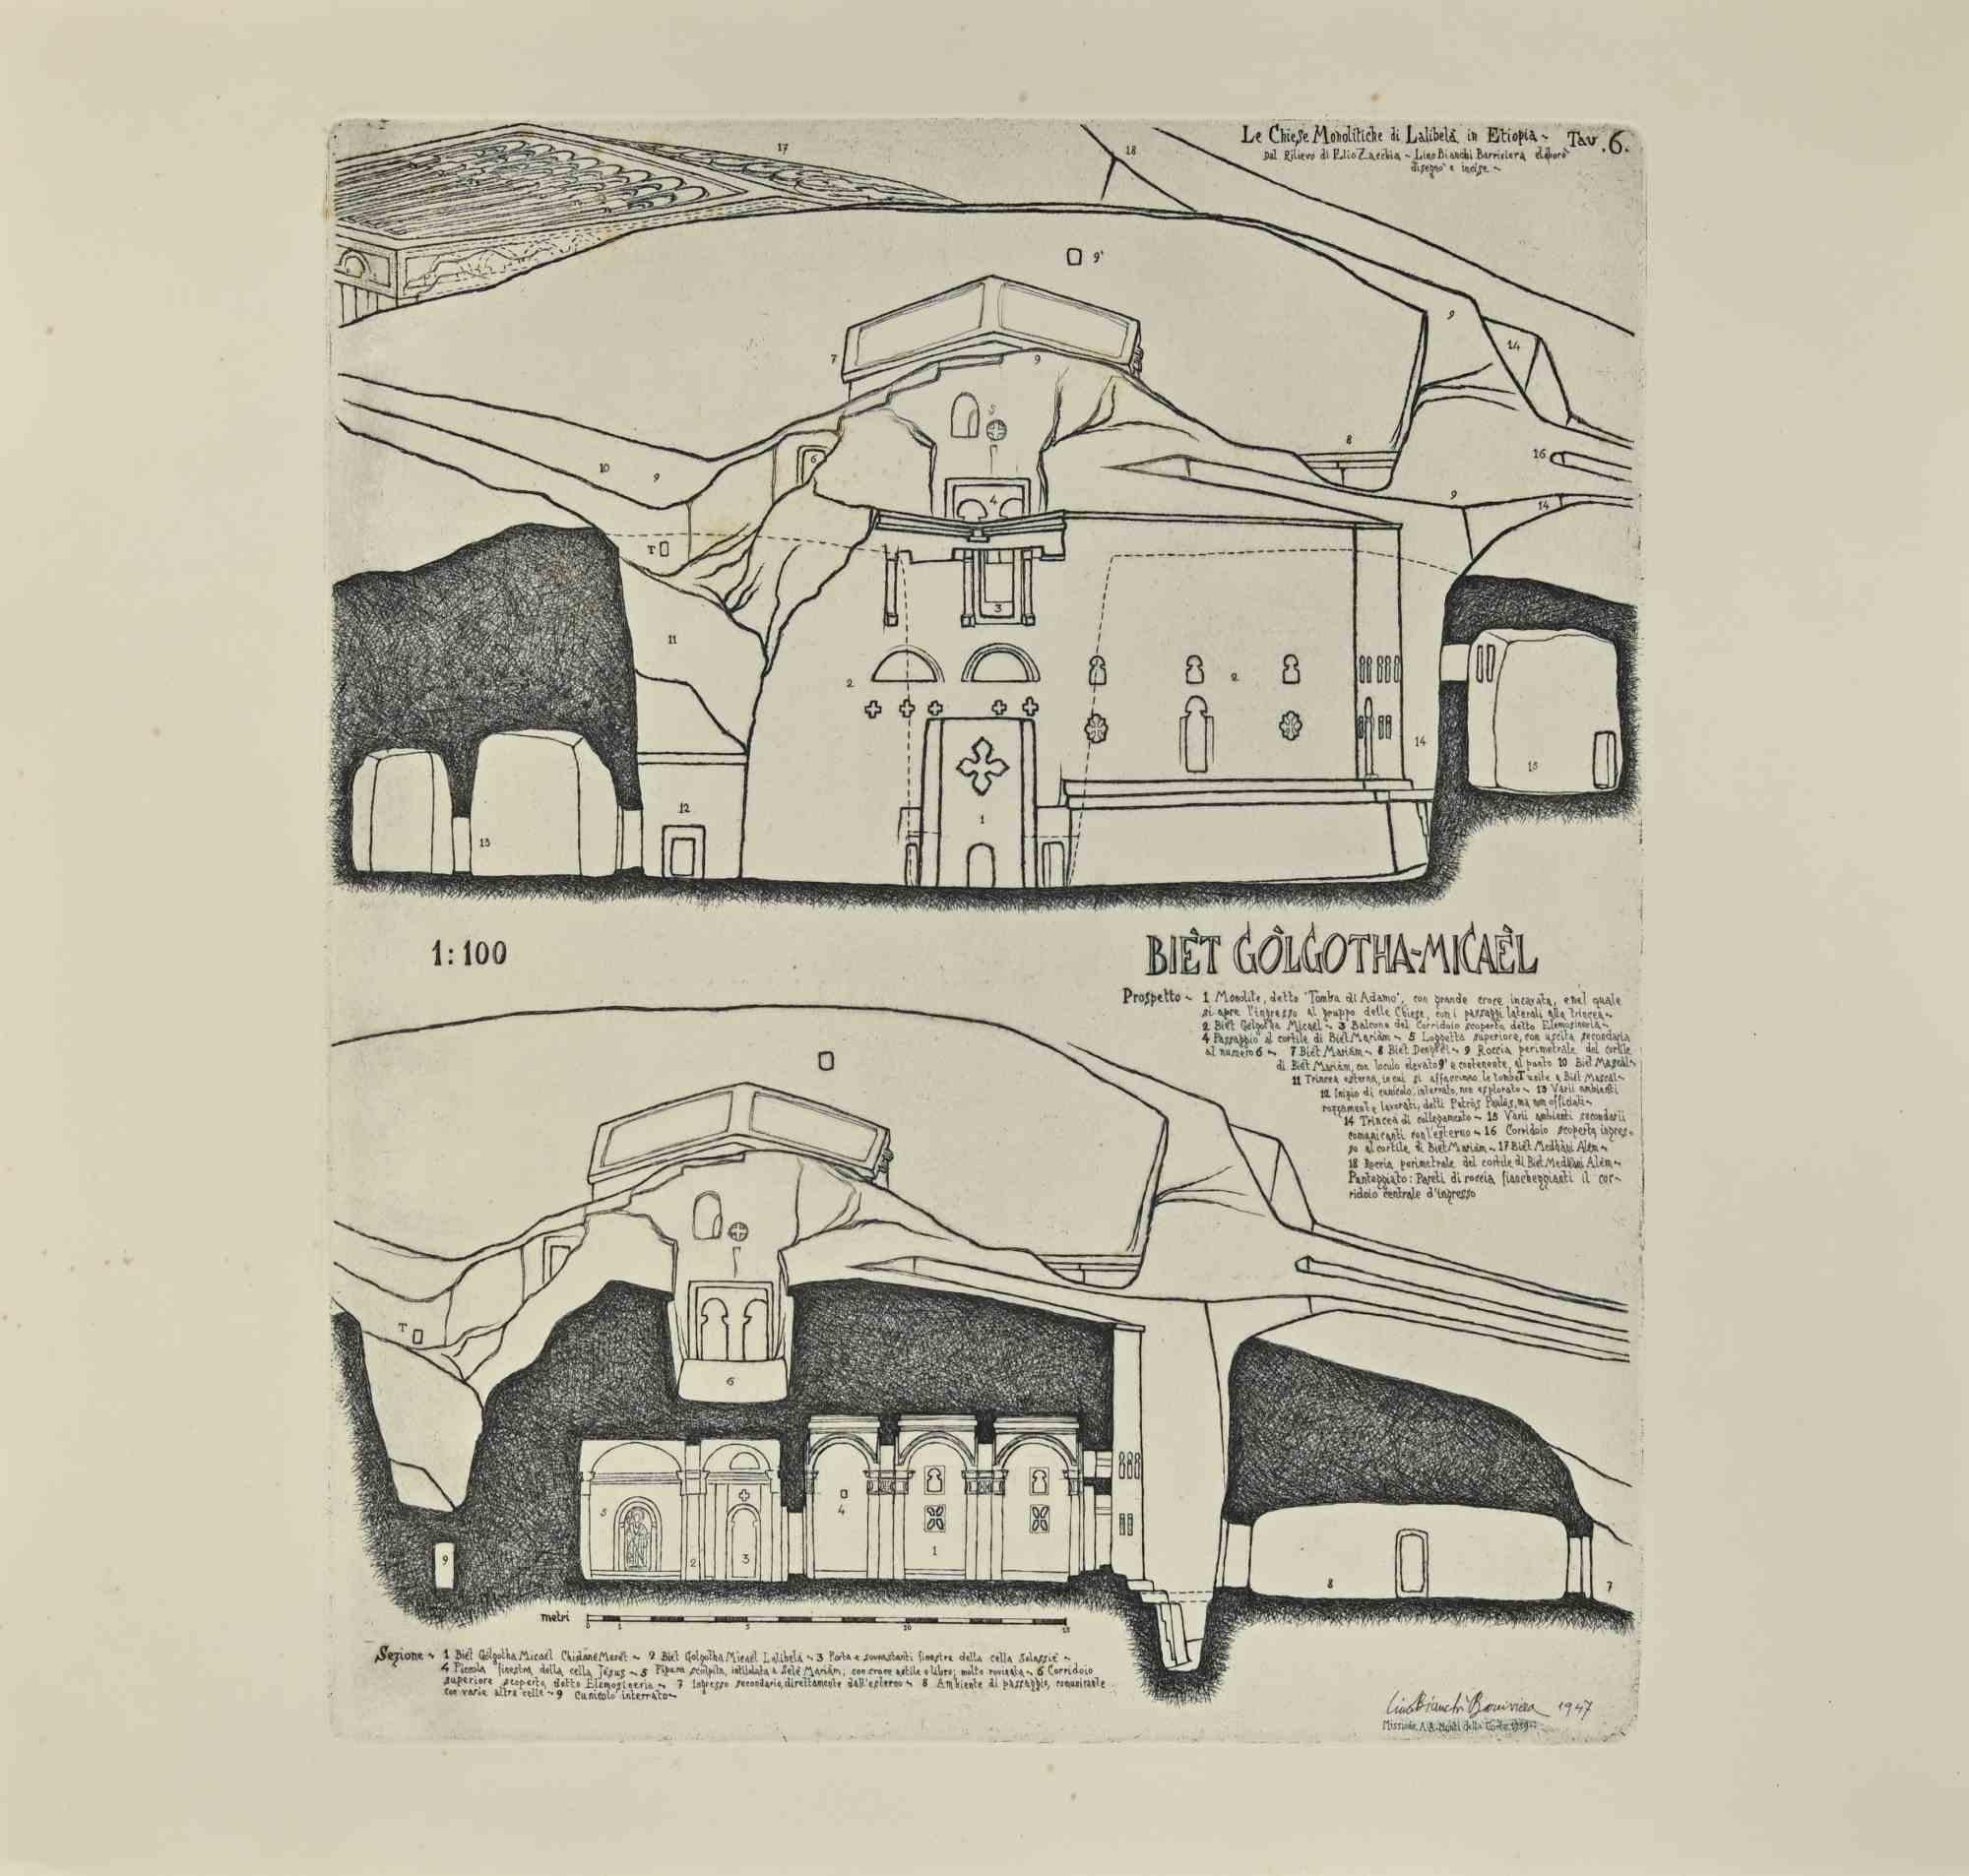 Le Tombeau d'Adams et le Biet Golgotha-Micael - Élévation et coupes est une œuvre d'art moderne réalisée par Lino Bianchi Barriviera en 1947.

Gravure en noir et blanc.

Signé et daté sur la plaque.

Planche n.6 (comme indiqué dans la marge